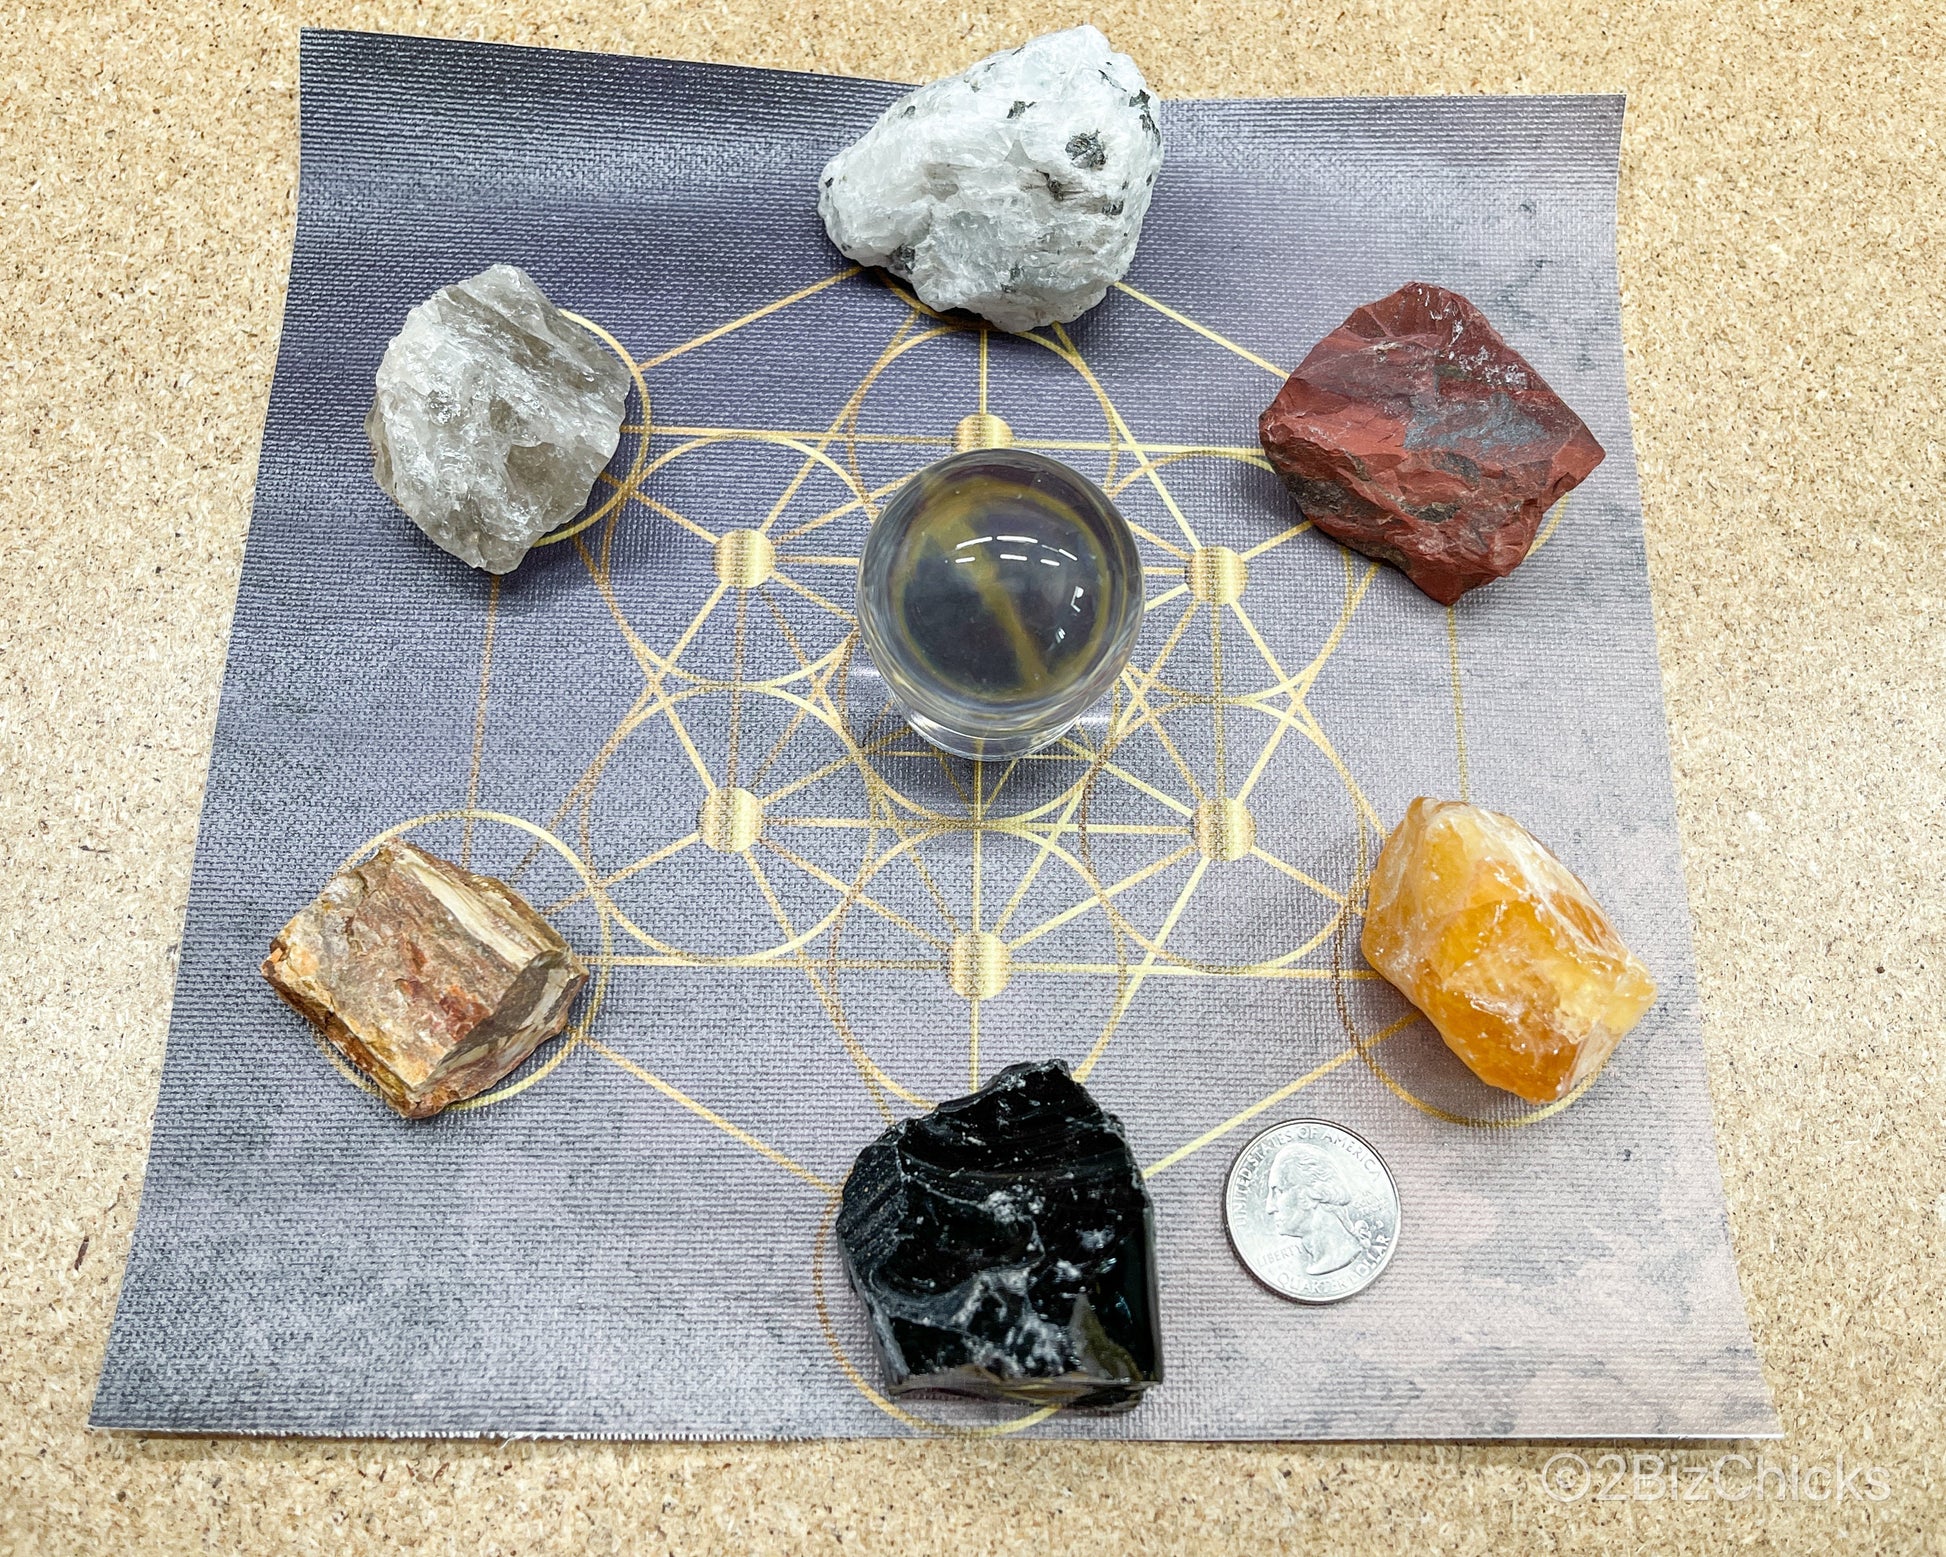 Samhain Crystal Set